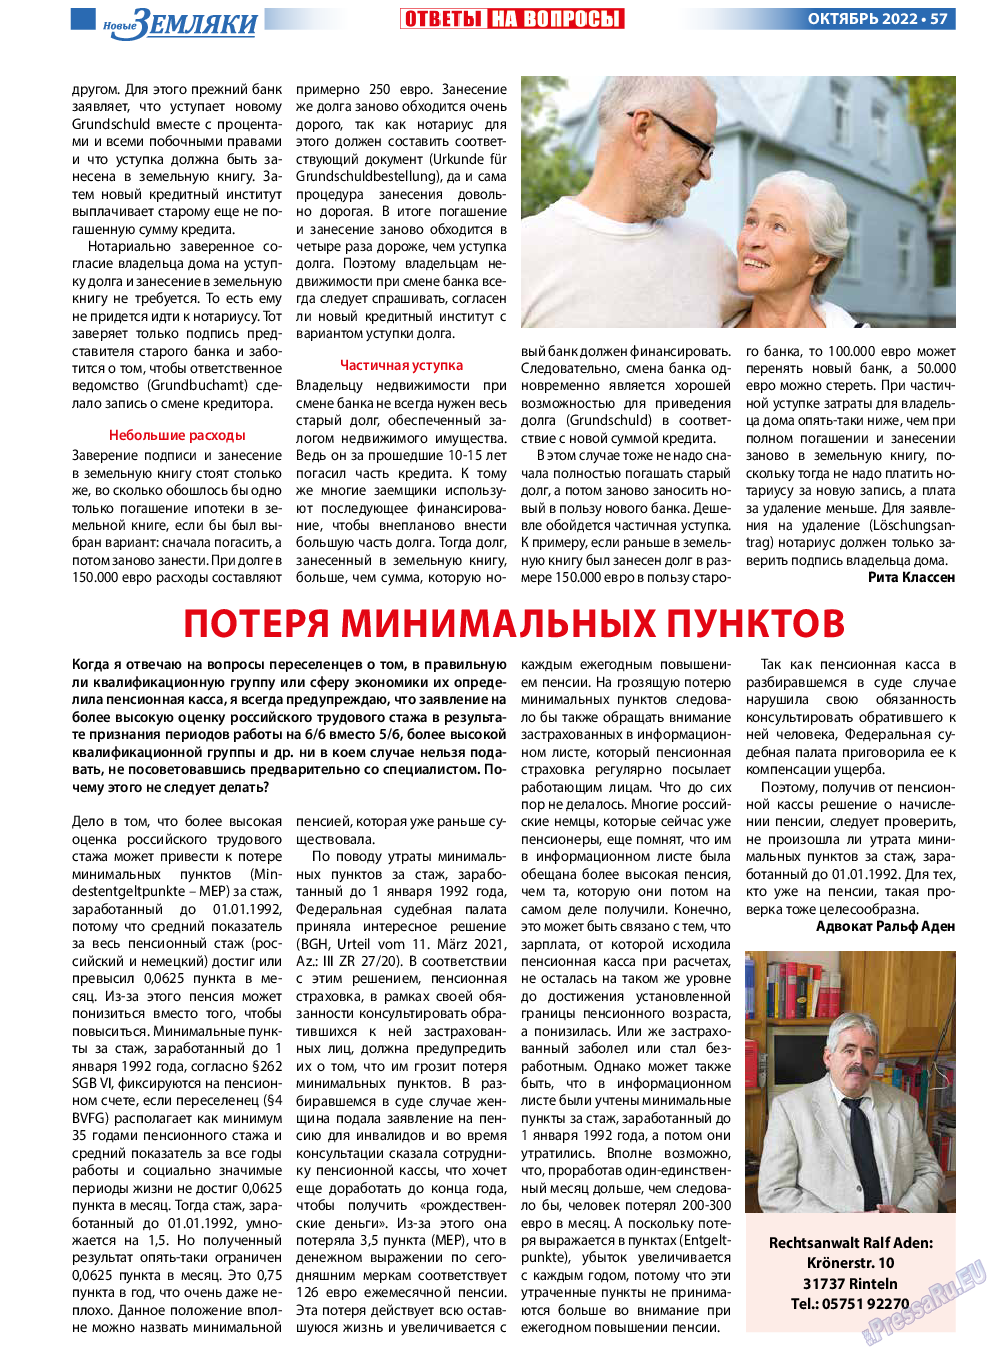 Новые Земляки, газета. 2022 №10 стр.57